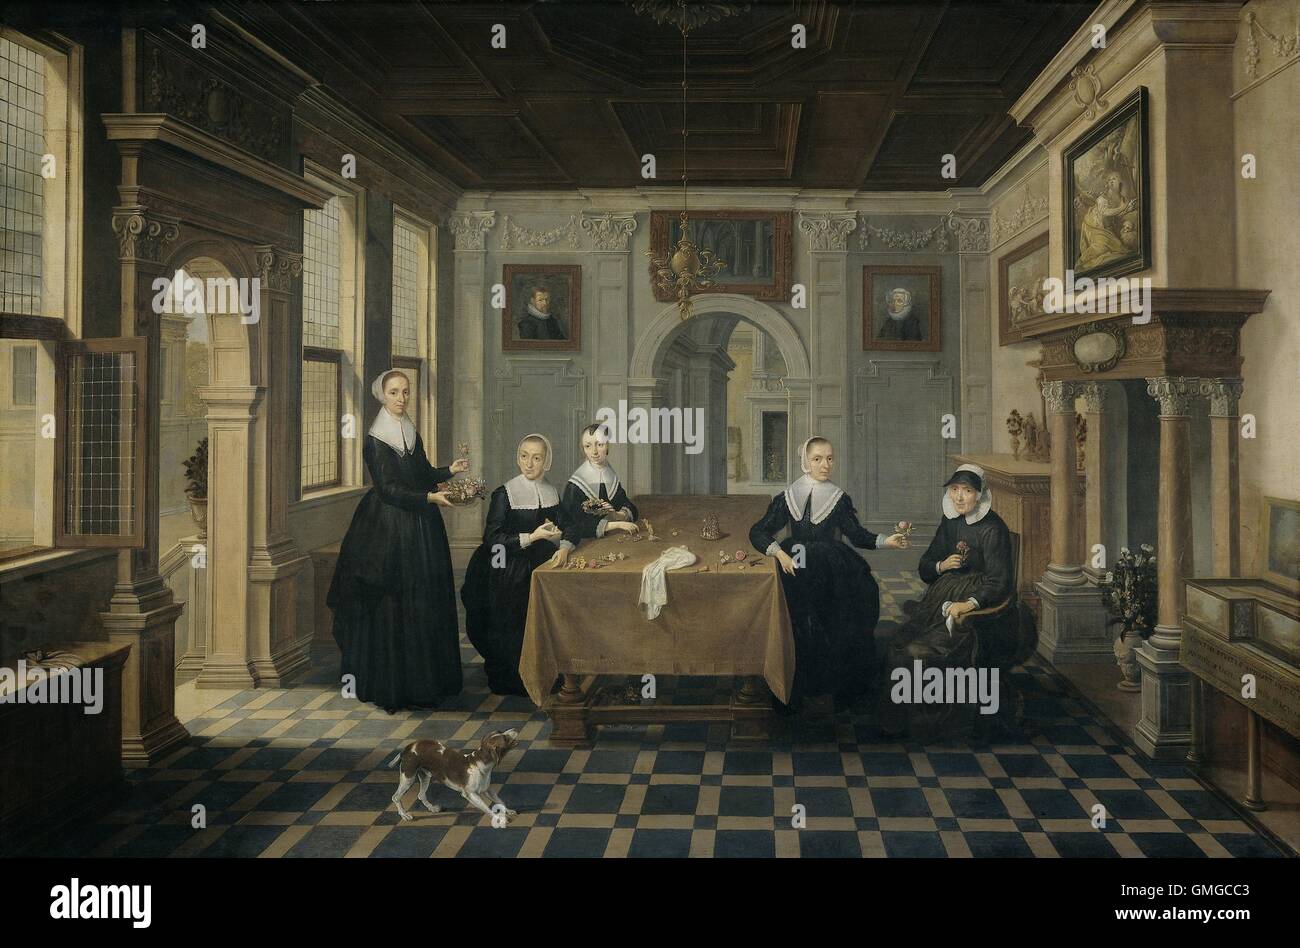 Cinq femmes dans un intérieur, attribué à Dirck van Delen, 1630-52, la peinture hollandaise, huile sur panneau. Quatre adultes et une femmes âgées autour d'une table dans une salle élégante avec des éléments architecturaux classiques (BSLOC 2016 3 228) Banque D'Images